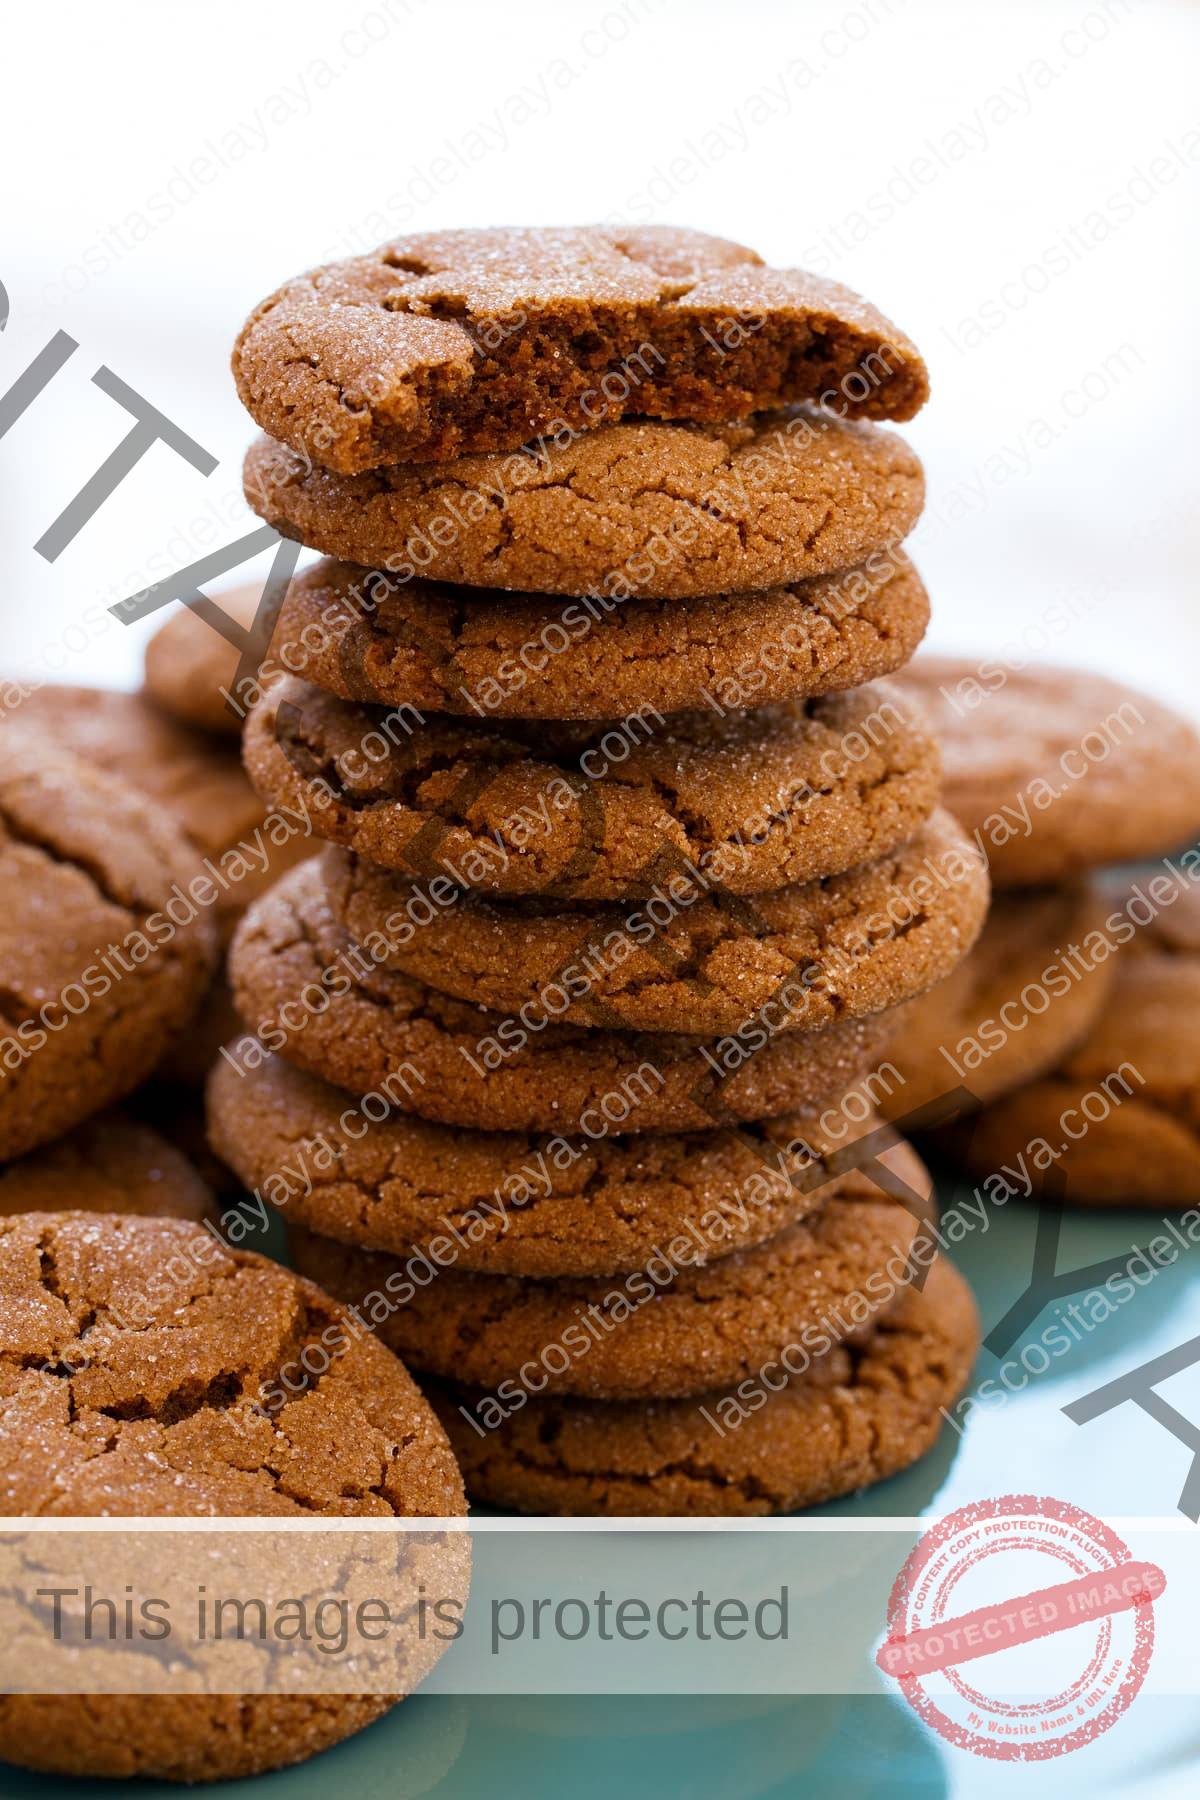 Montón alto de galletas de melaza con la galleta superior partida por la mitad para mostrar la textura suave y húmeda del interior.